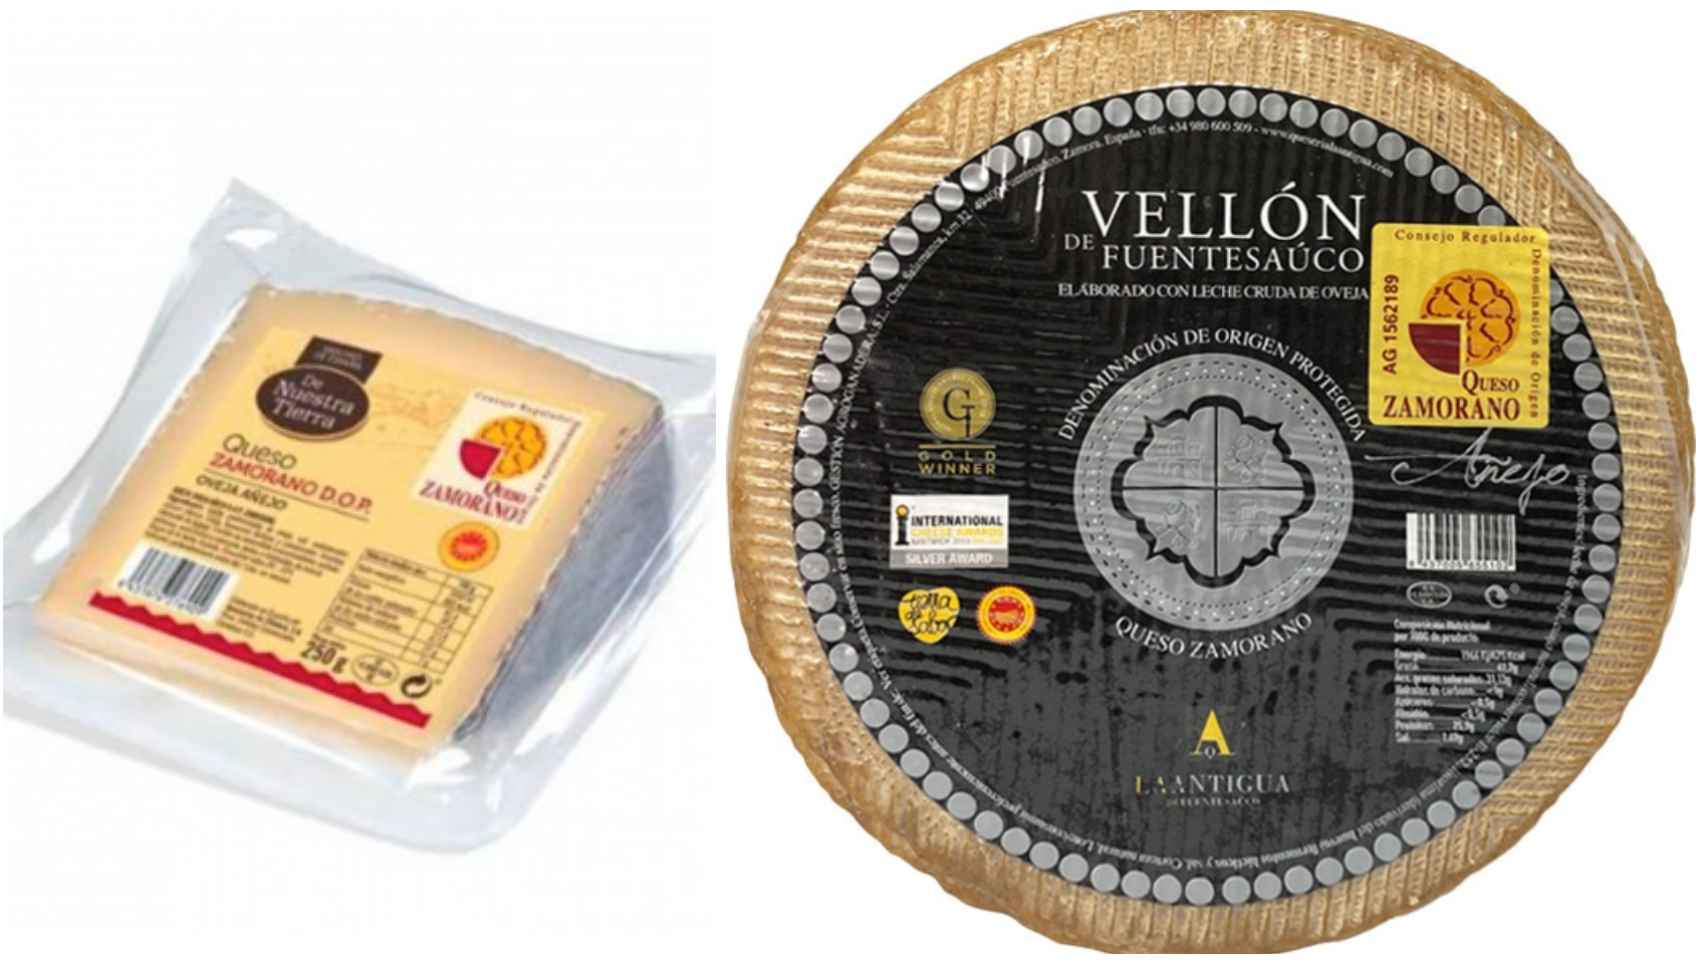 A la izquierda, la cuña del queso De Nuestra Tierra de Correfour y, a la derecha, el Vellón de Fuentesaúco, ambos con D.O. Zamorano.